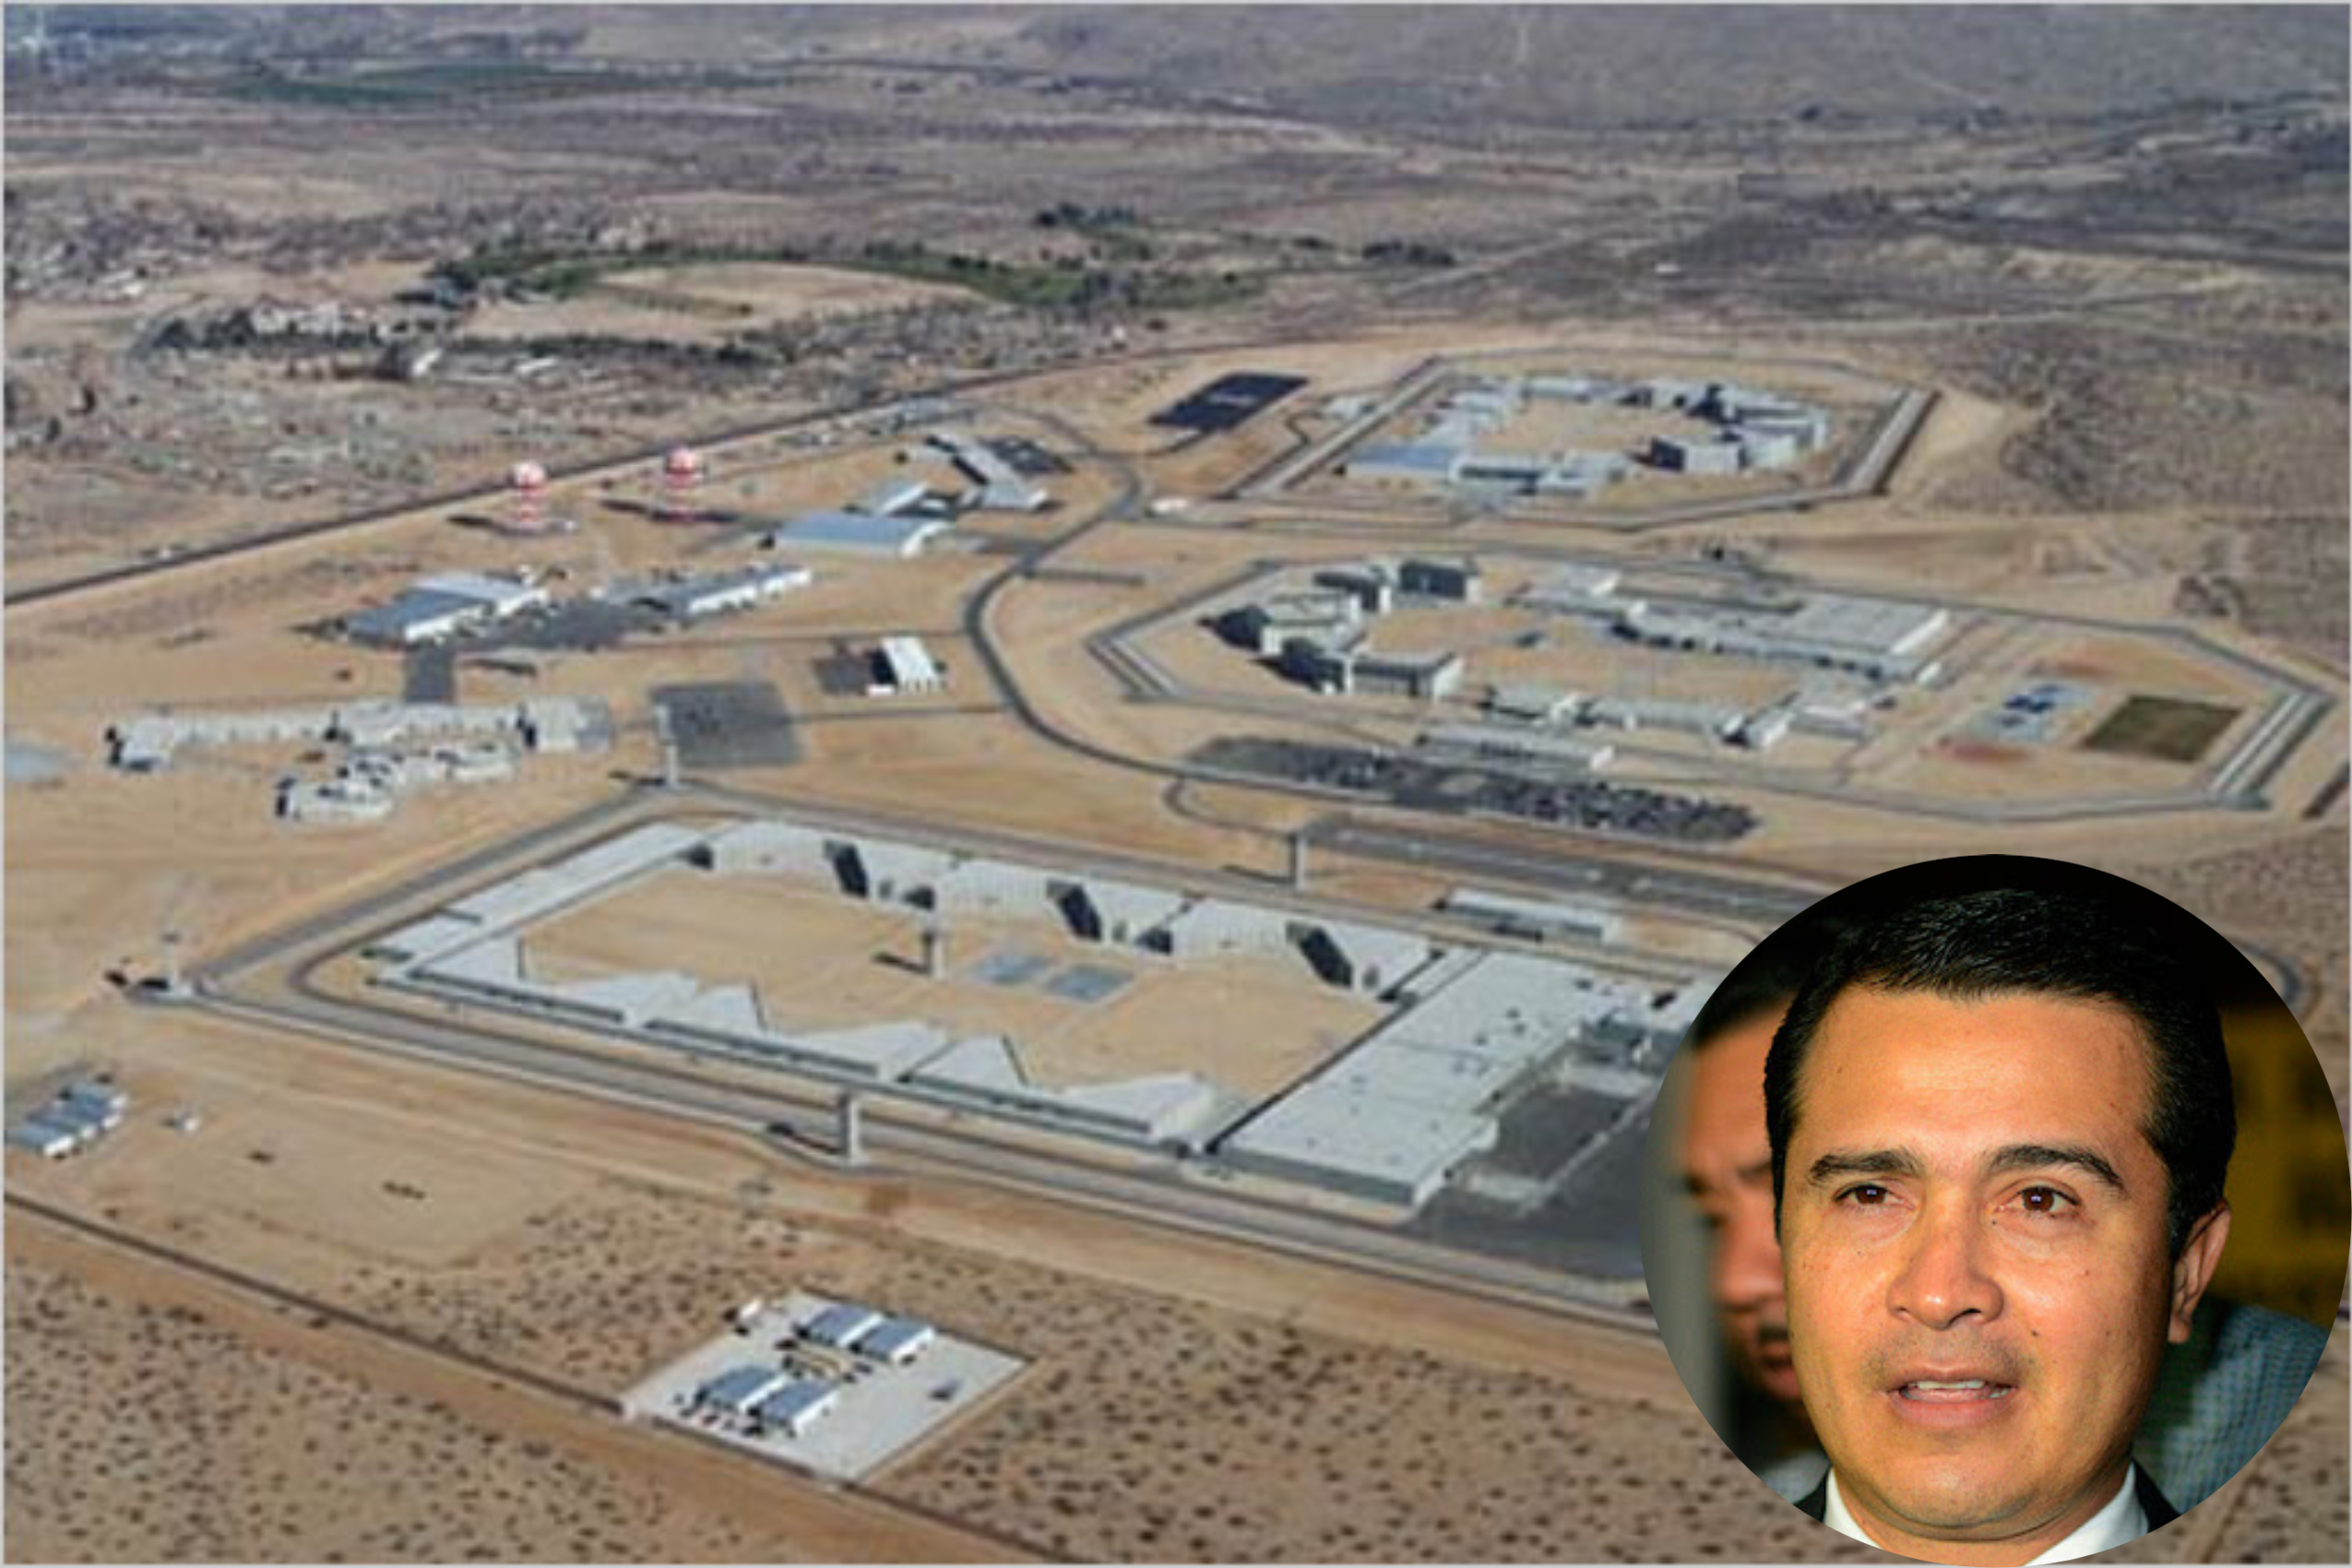 En la cárcel de máxima seguridad “Victorville” pagará su condena “Tony” Hernández